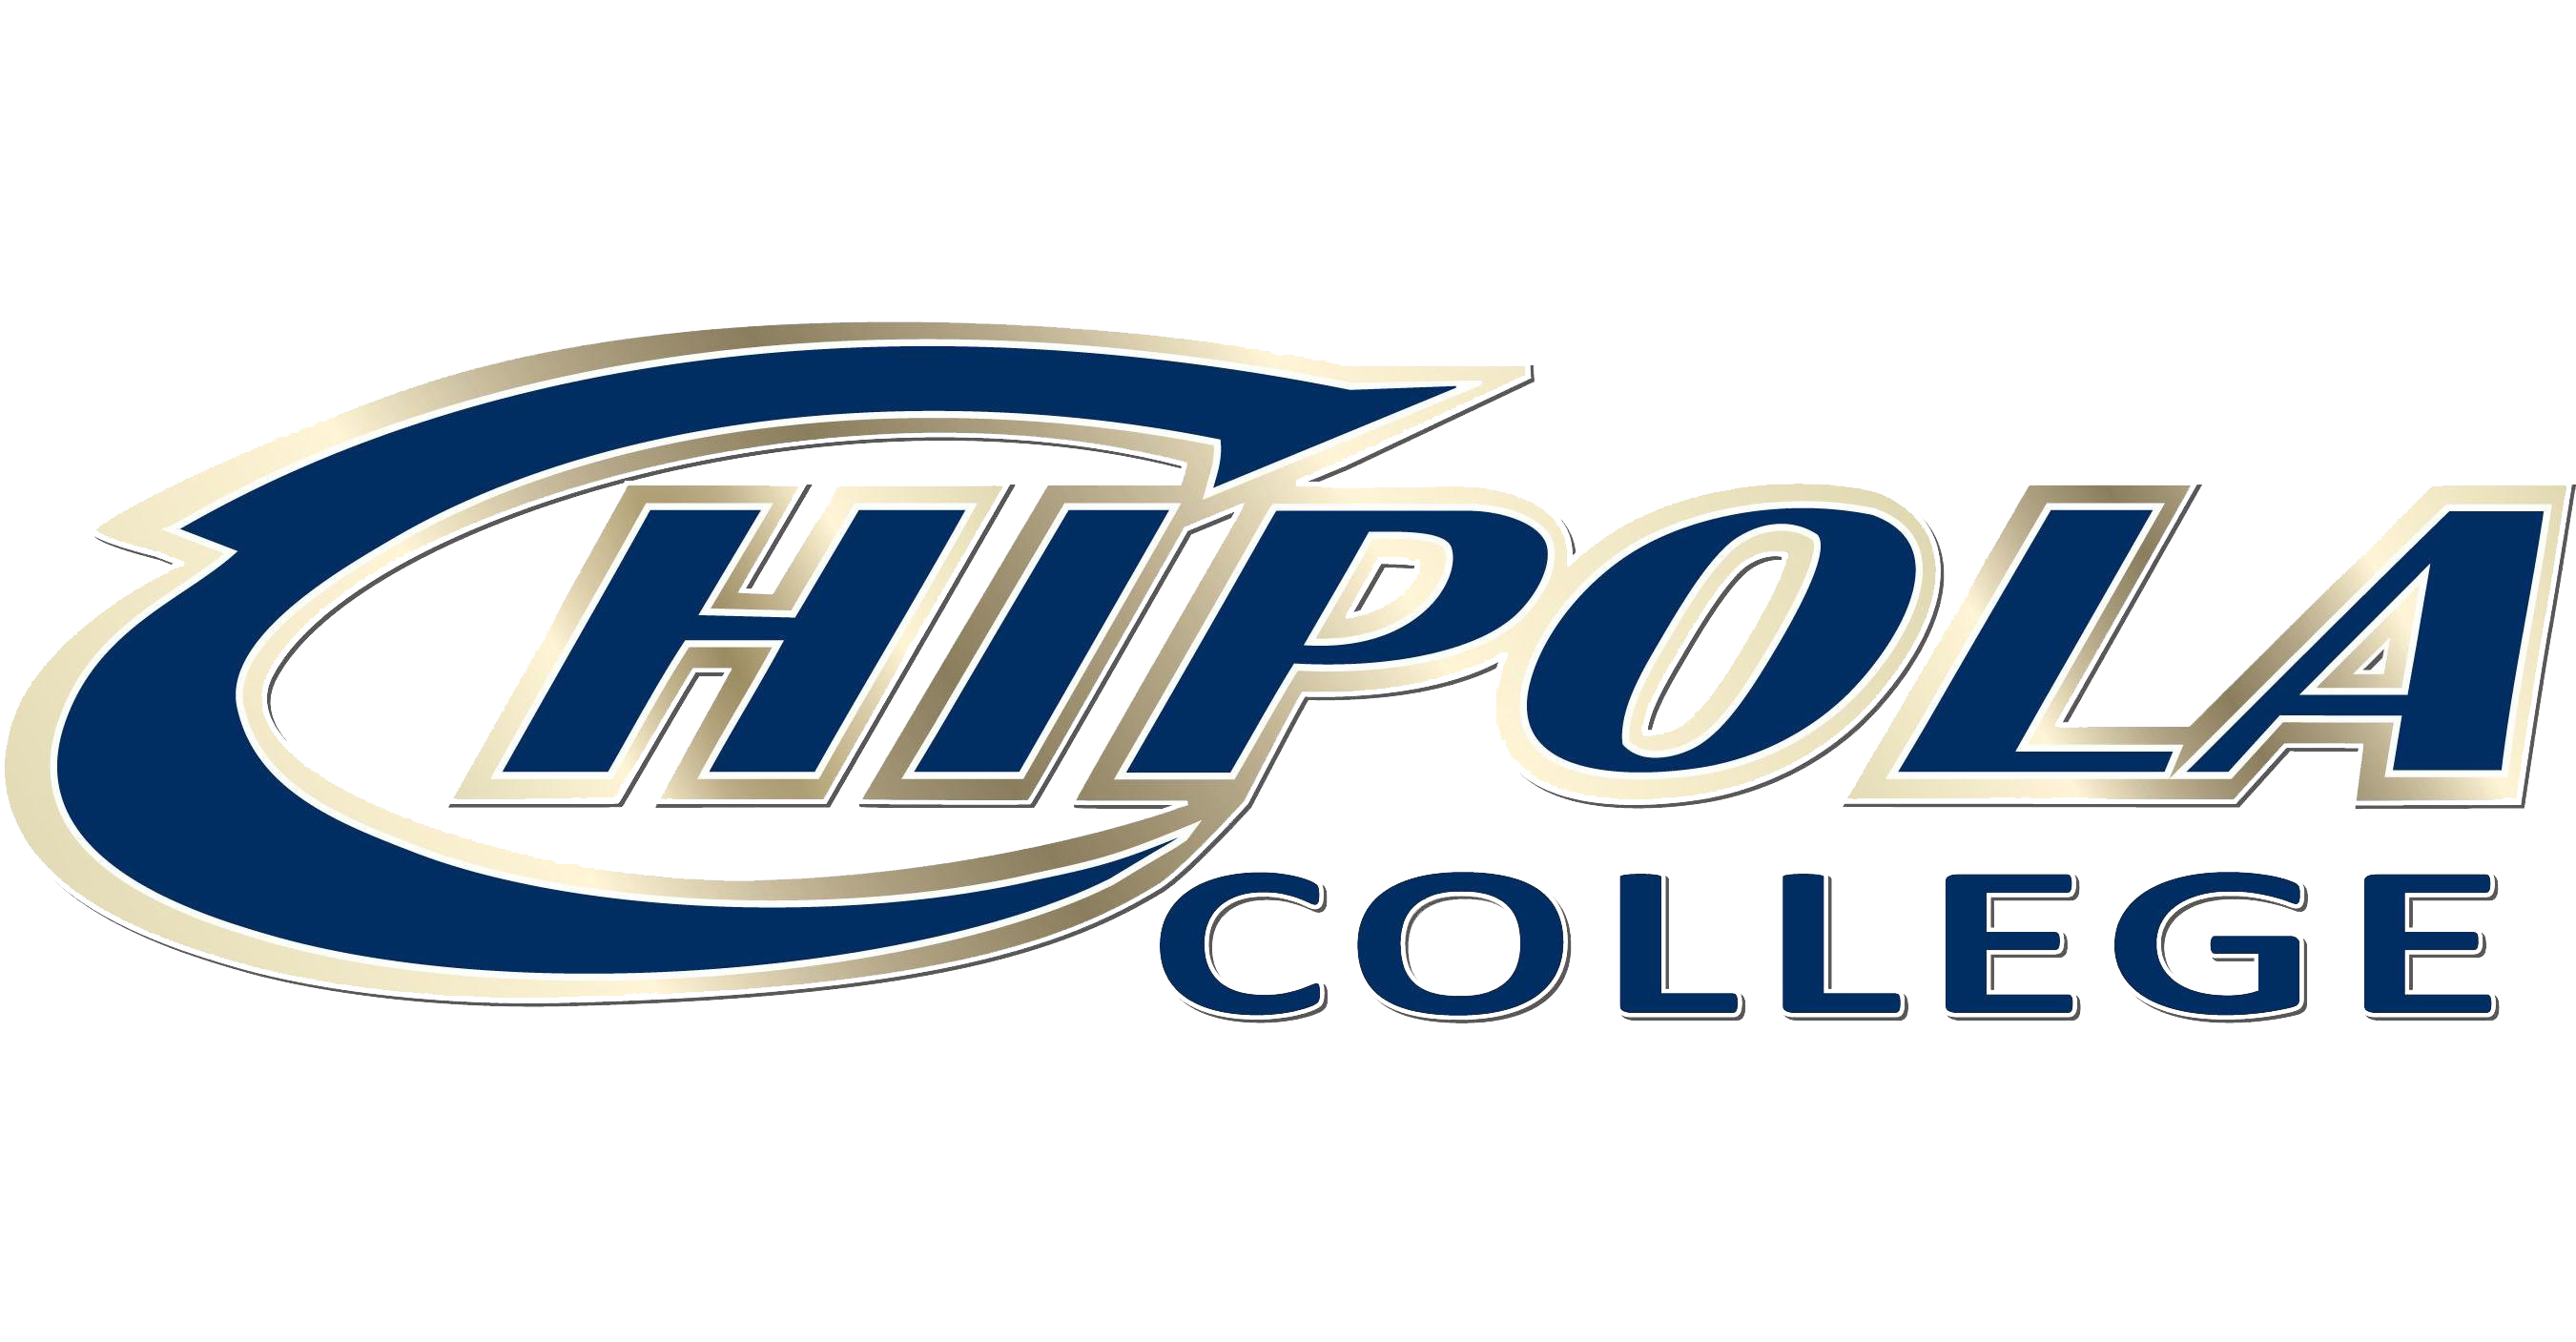 chipotle college icon